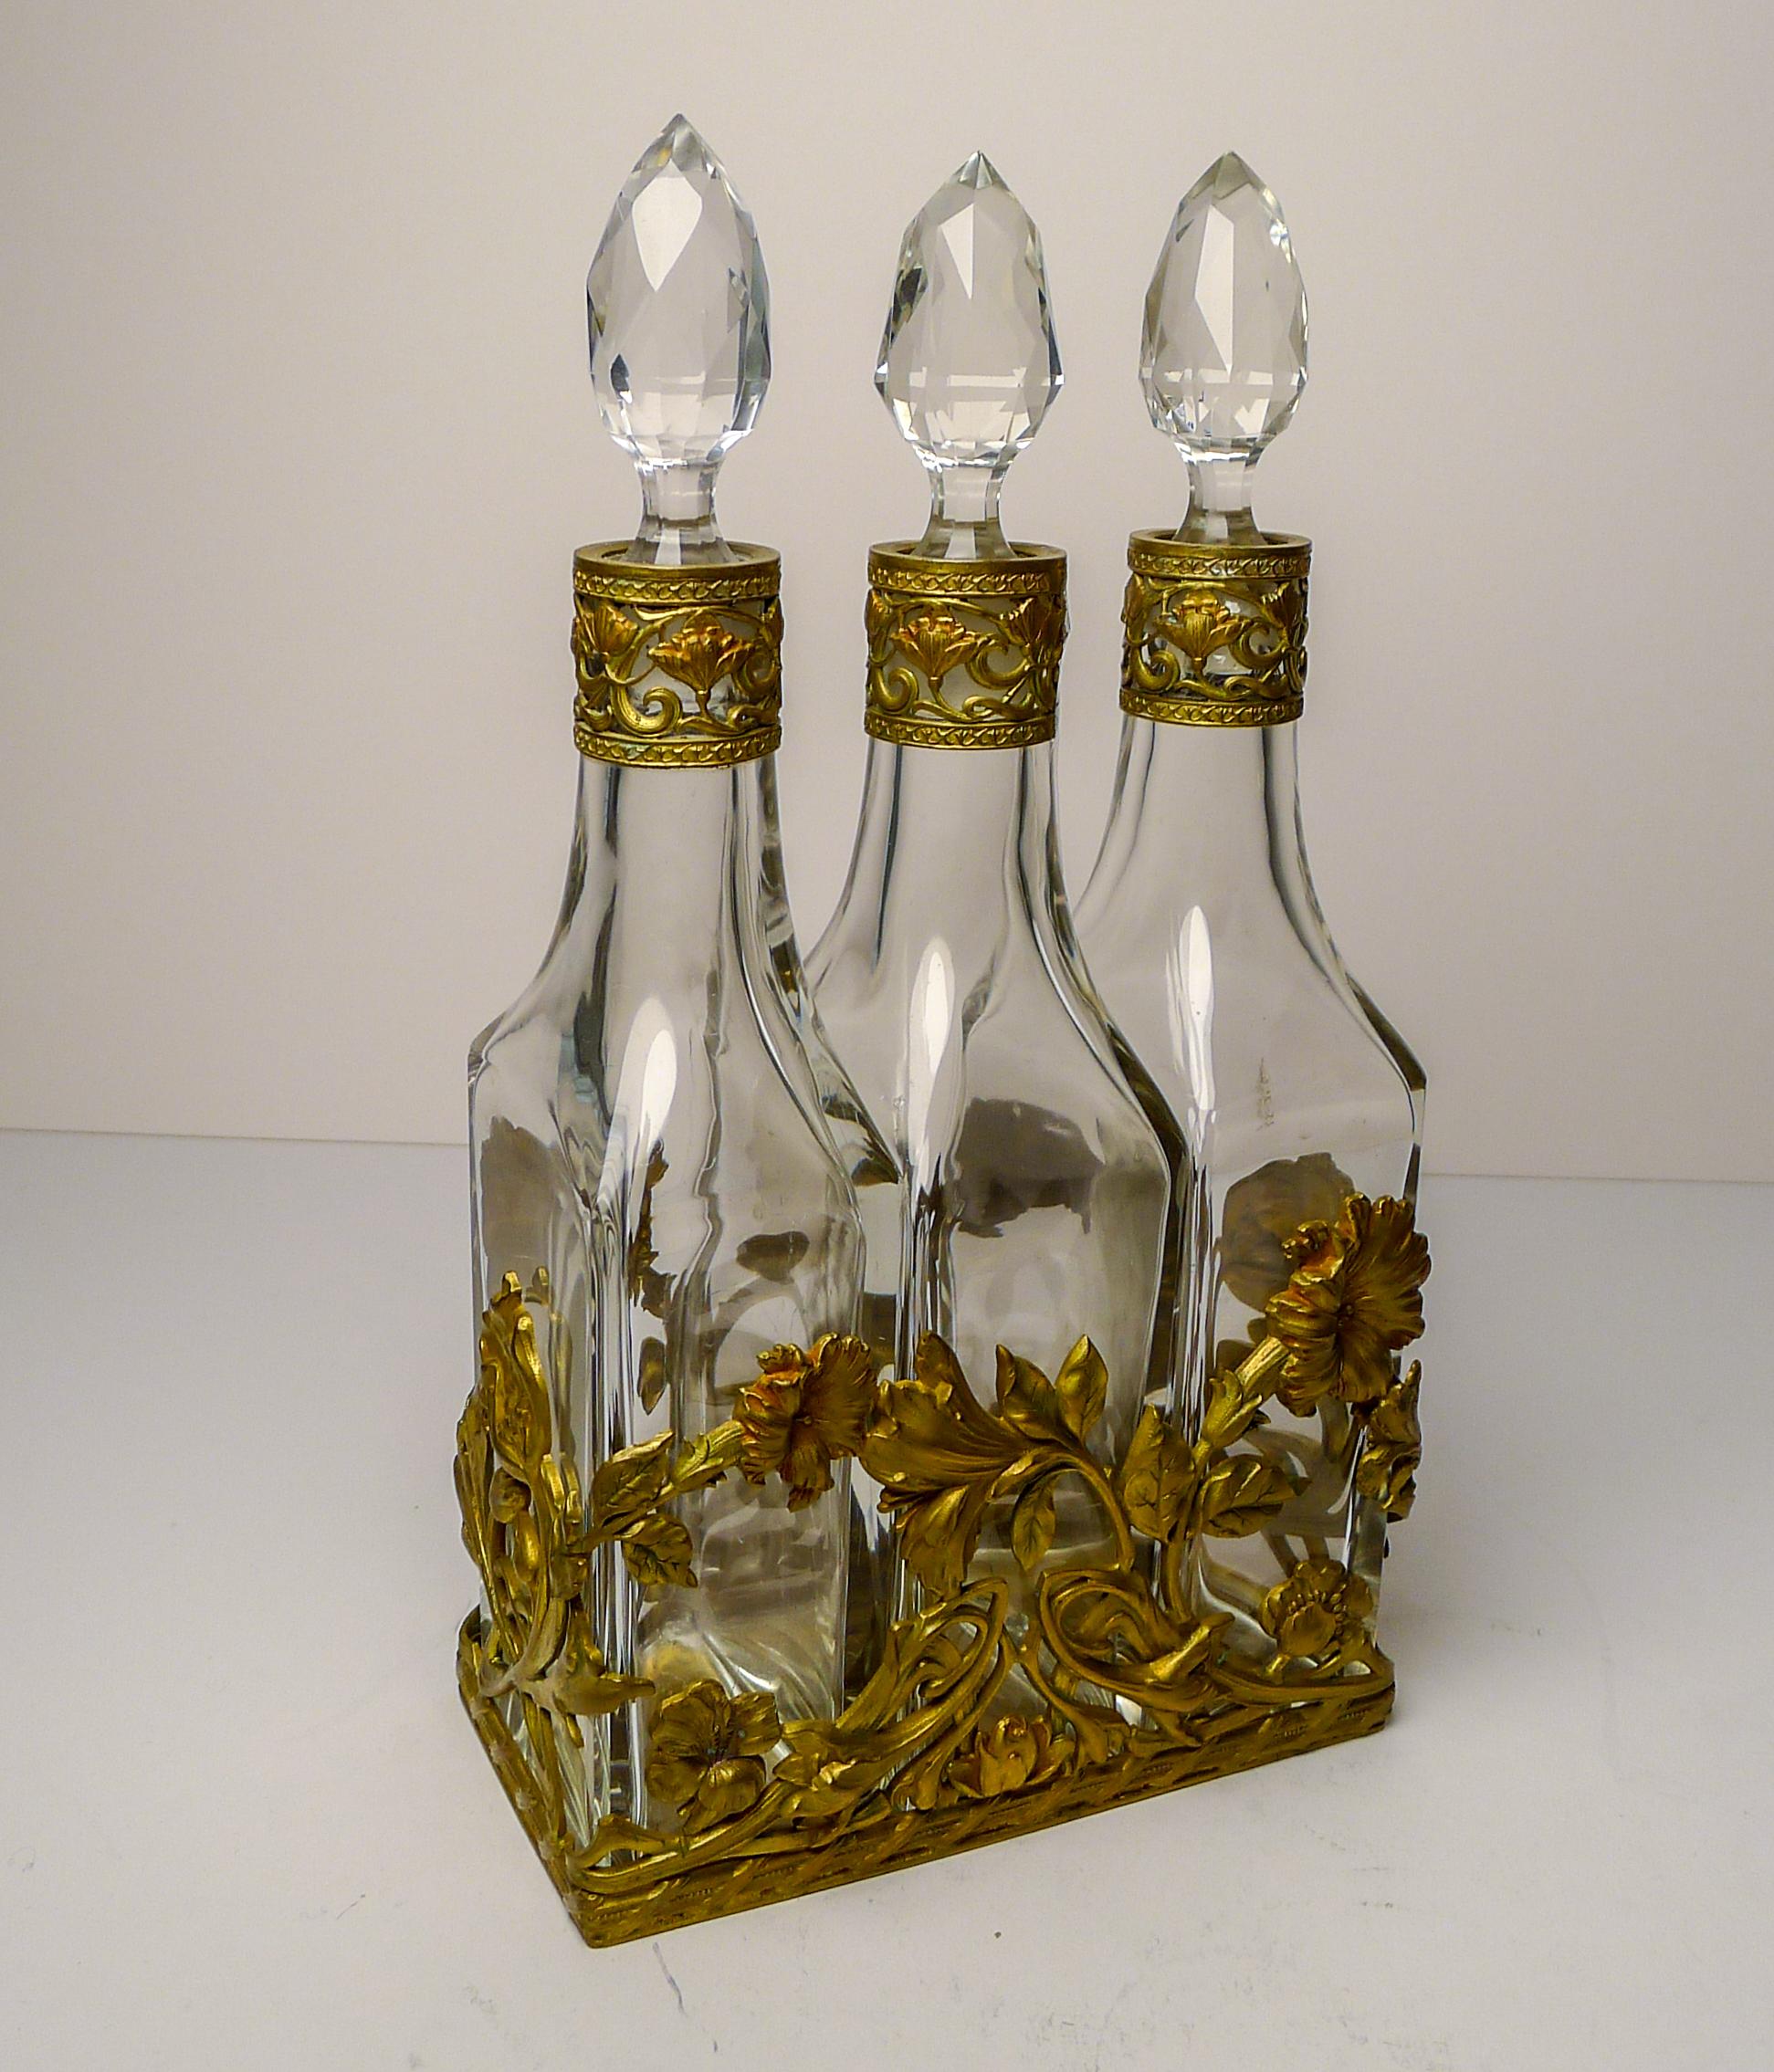 French Art Nouveau Liquor Decanter Set / Perfume Caddy c.1900 For Sale 9